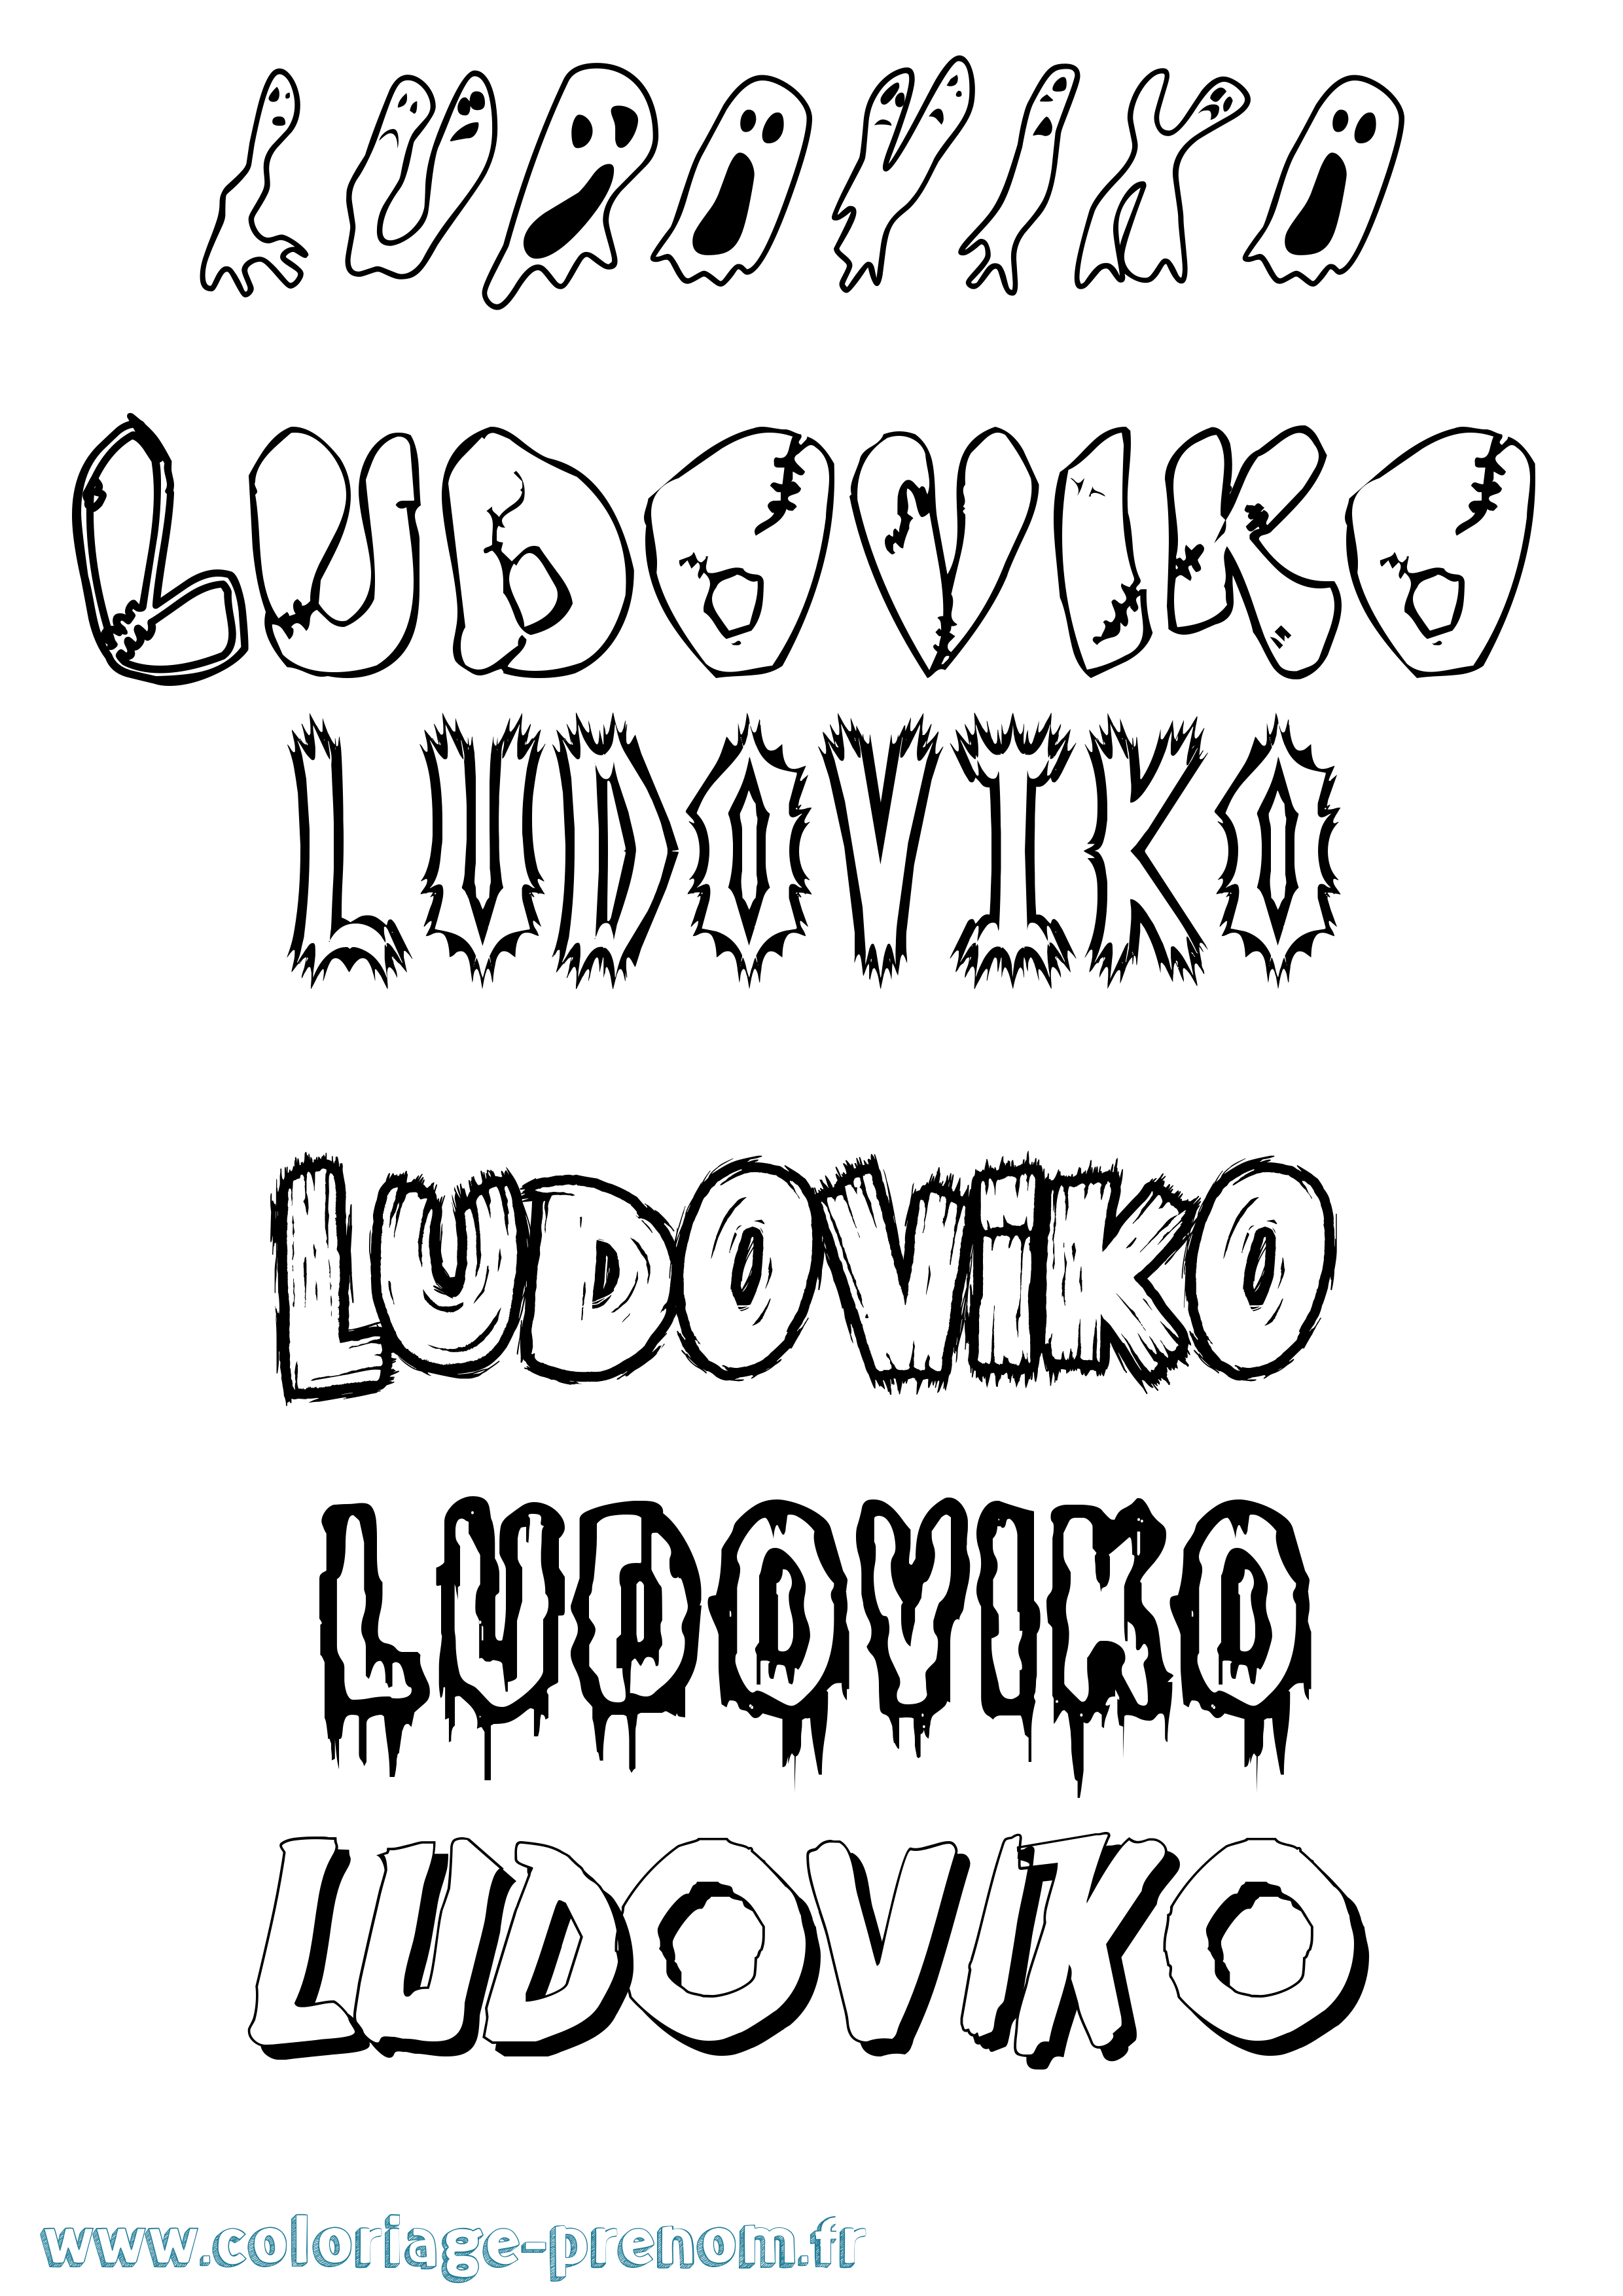 Coloriage prénom Ludoviko Frisson